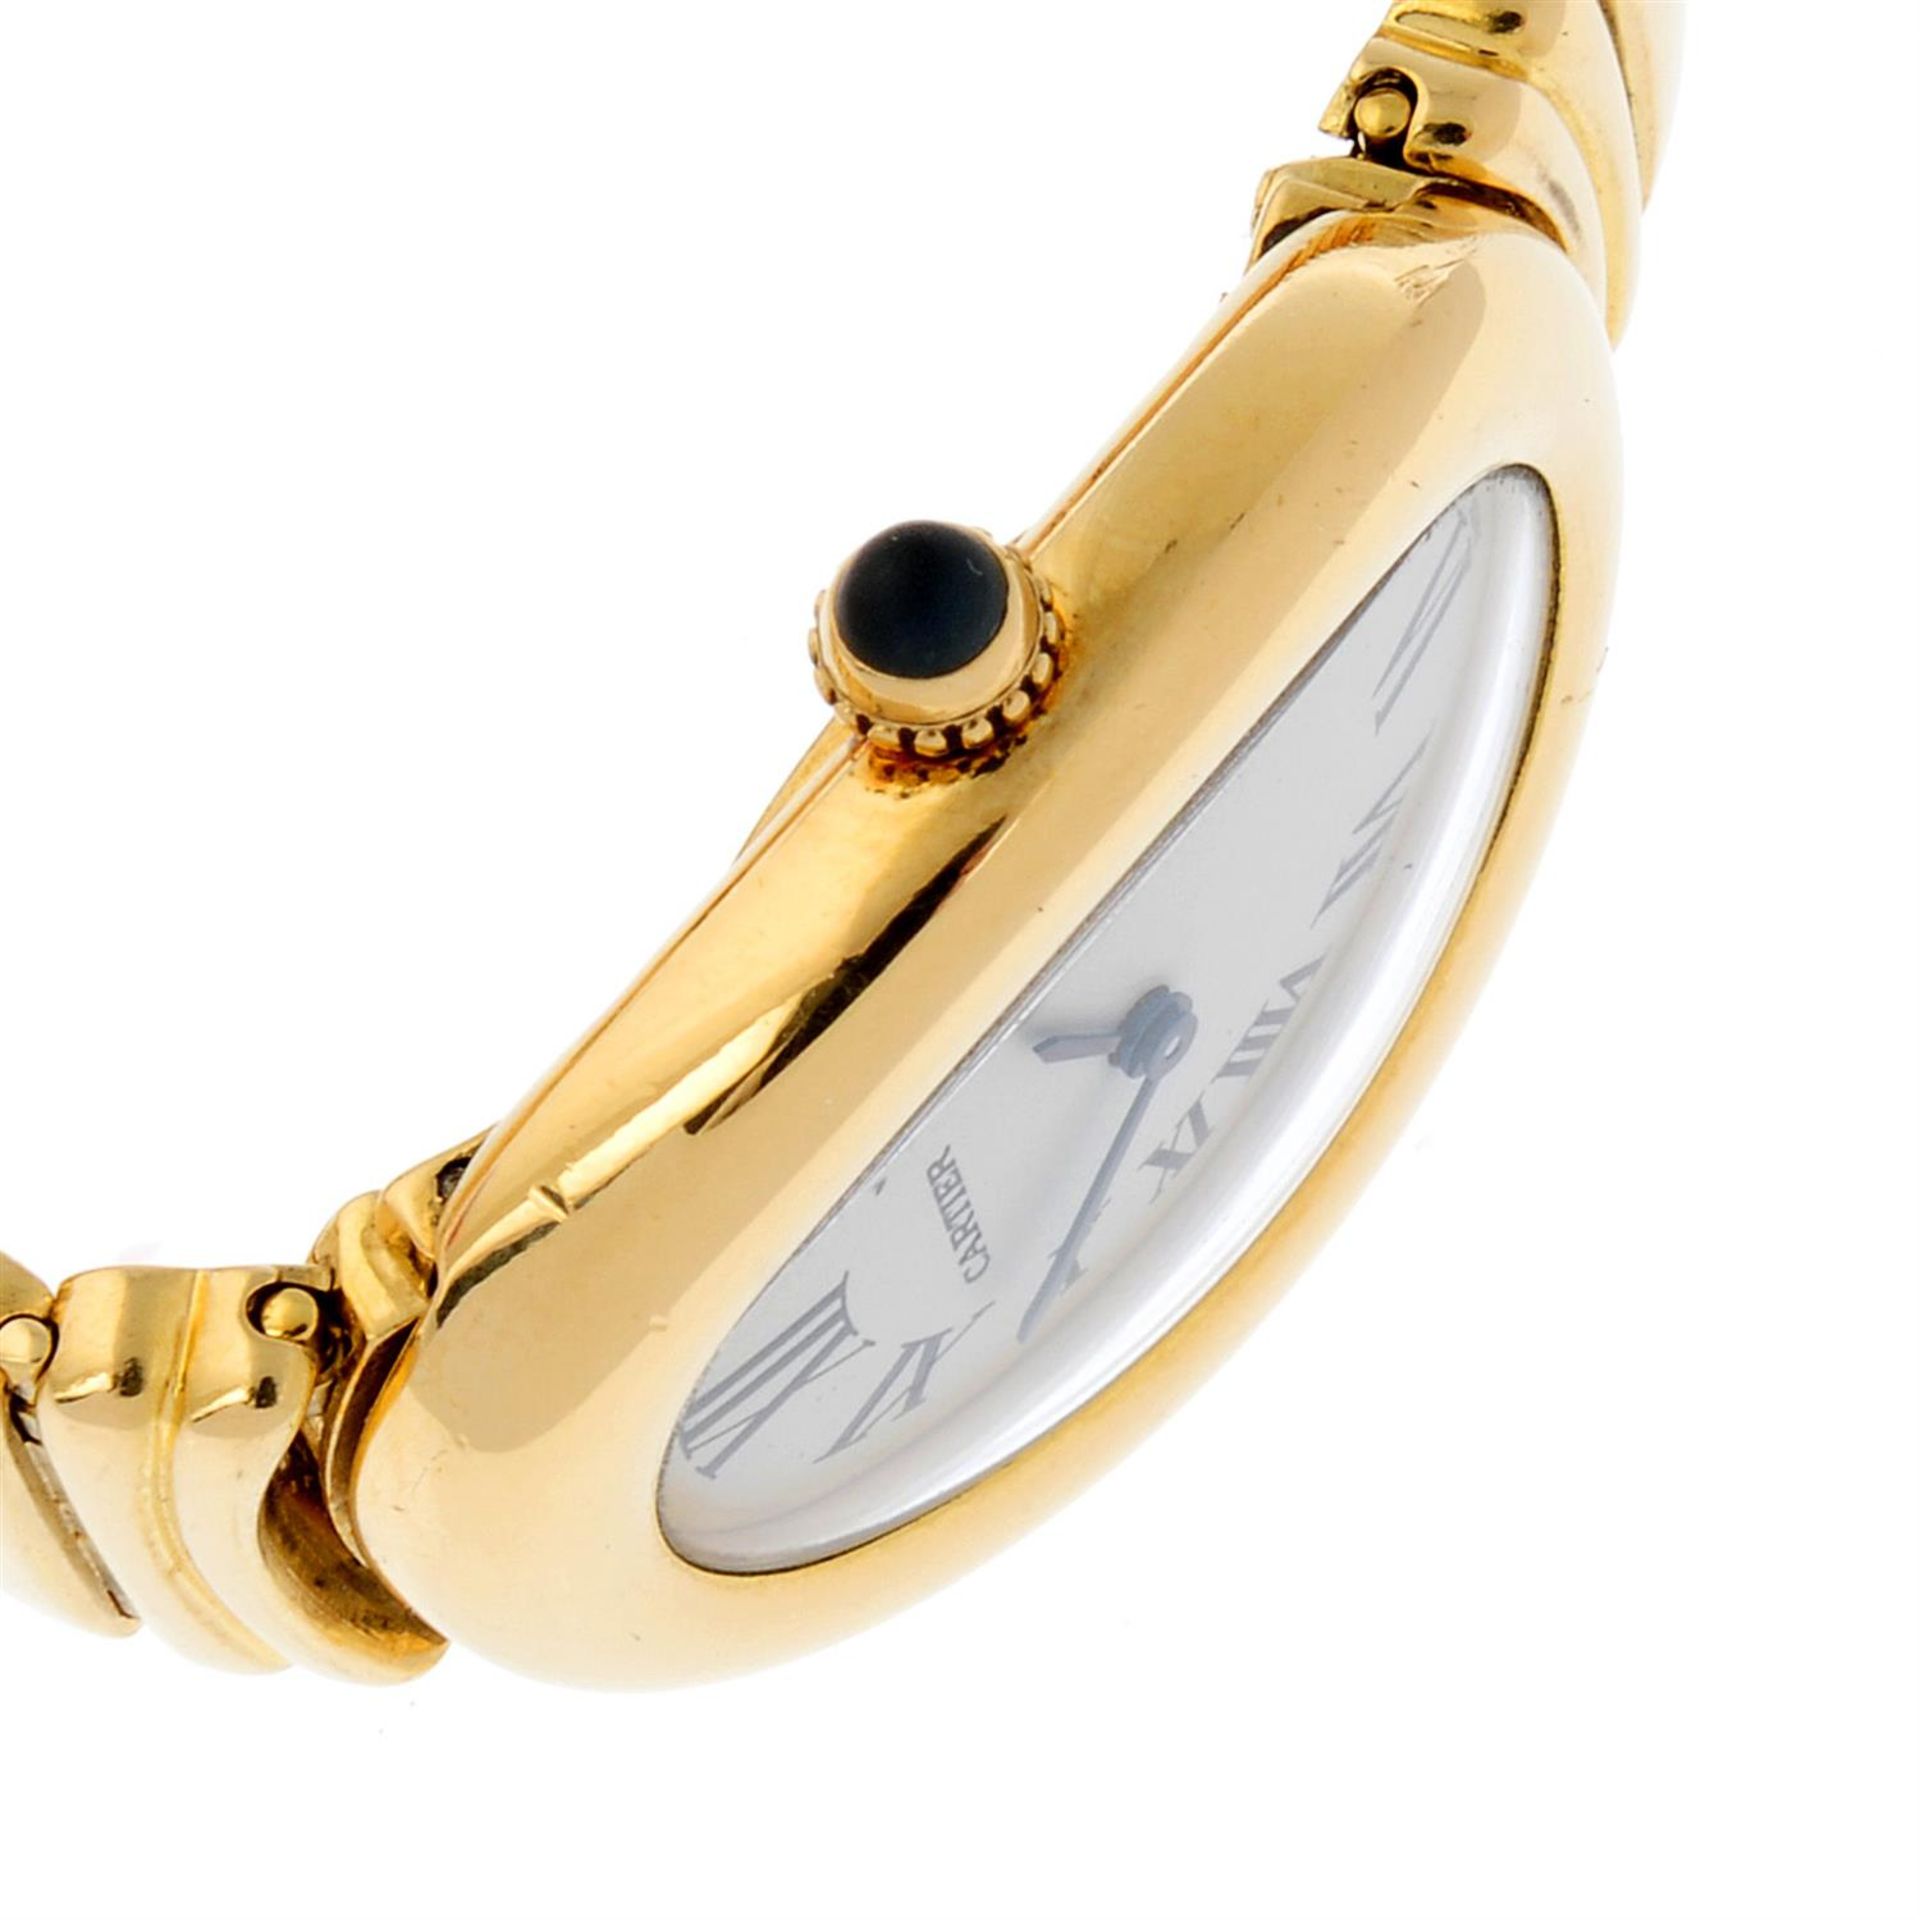 CARTIER - an 18ct yellow gold Baignoire bracelet watch, 22mmx30mm. - Bild 3 aus 6